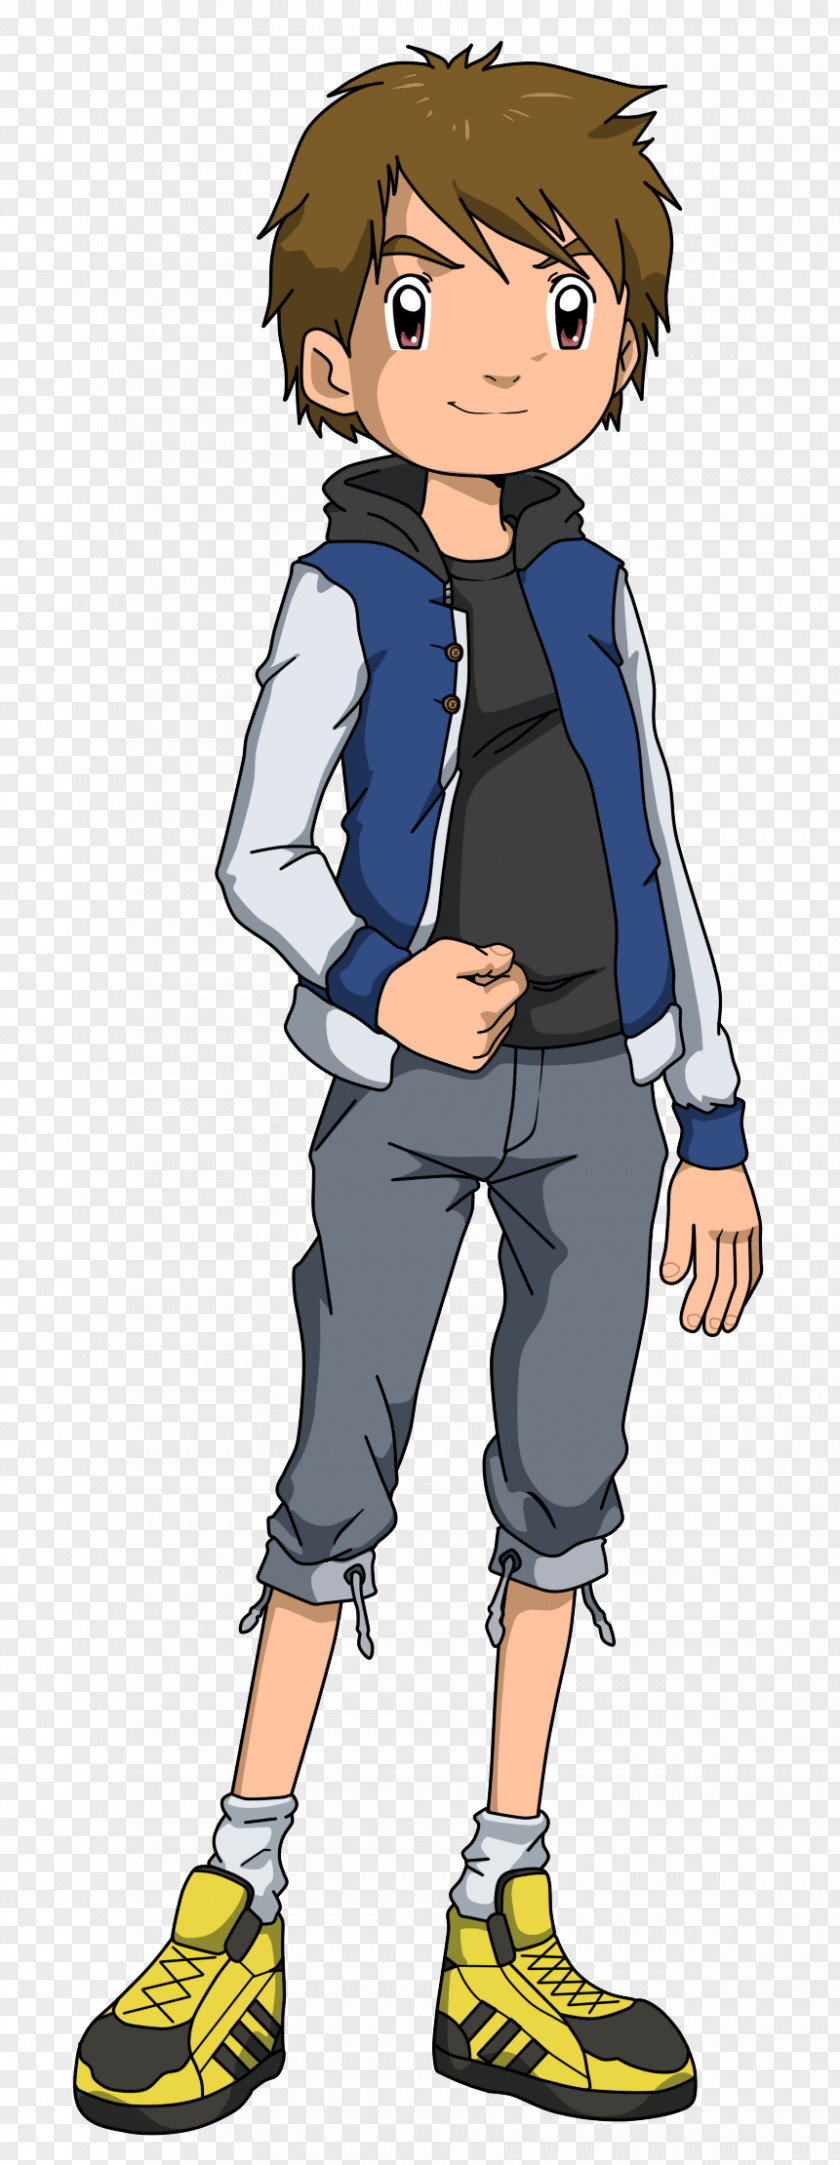 Digimon Takato Matsuki Guilmon Takuya Kanbara PNG